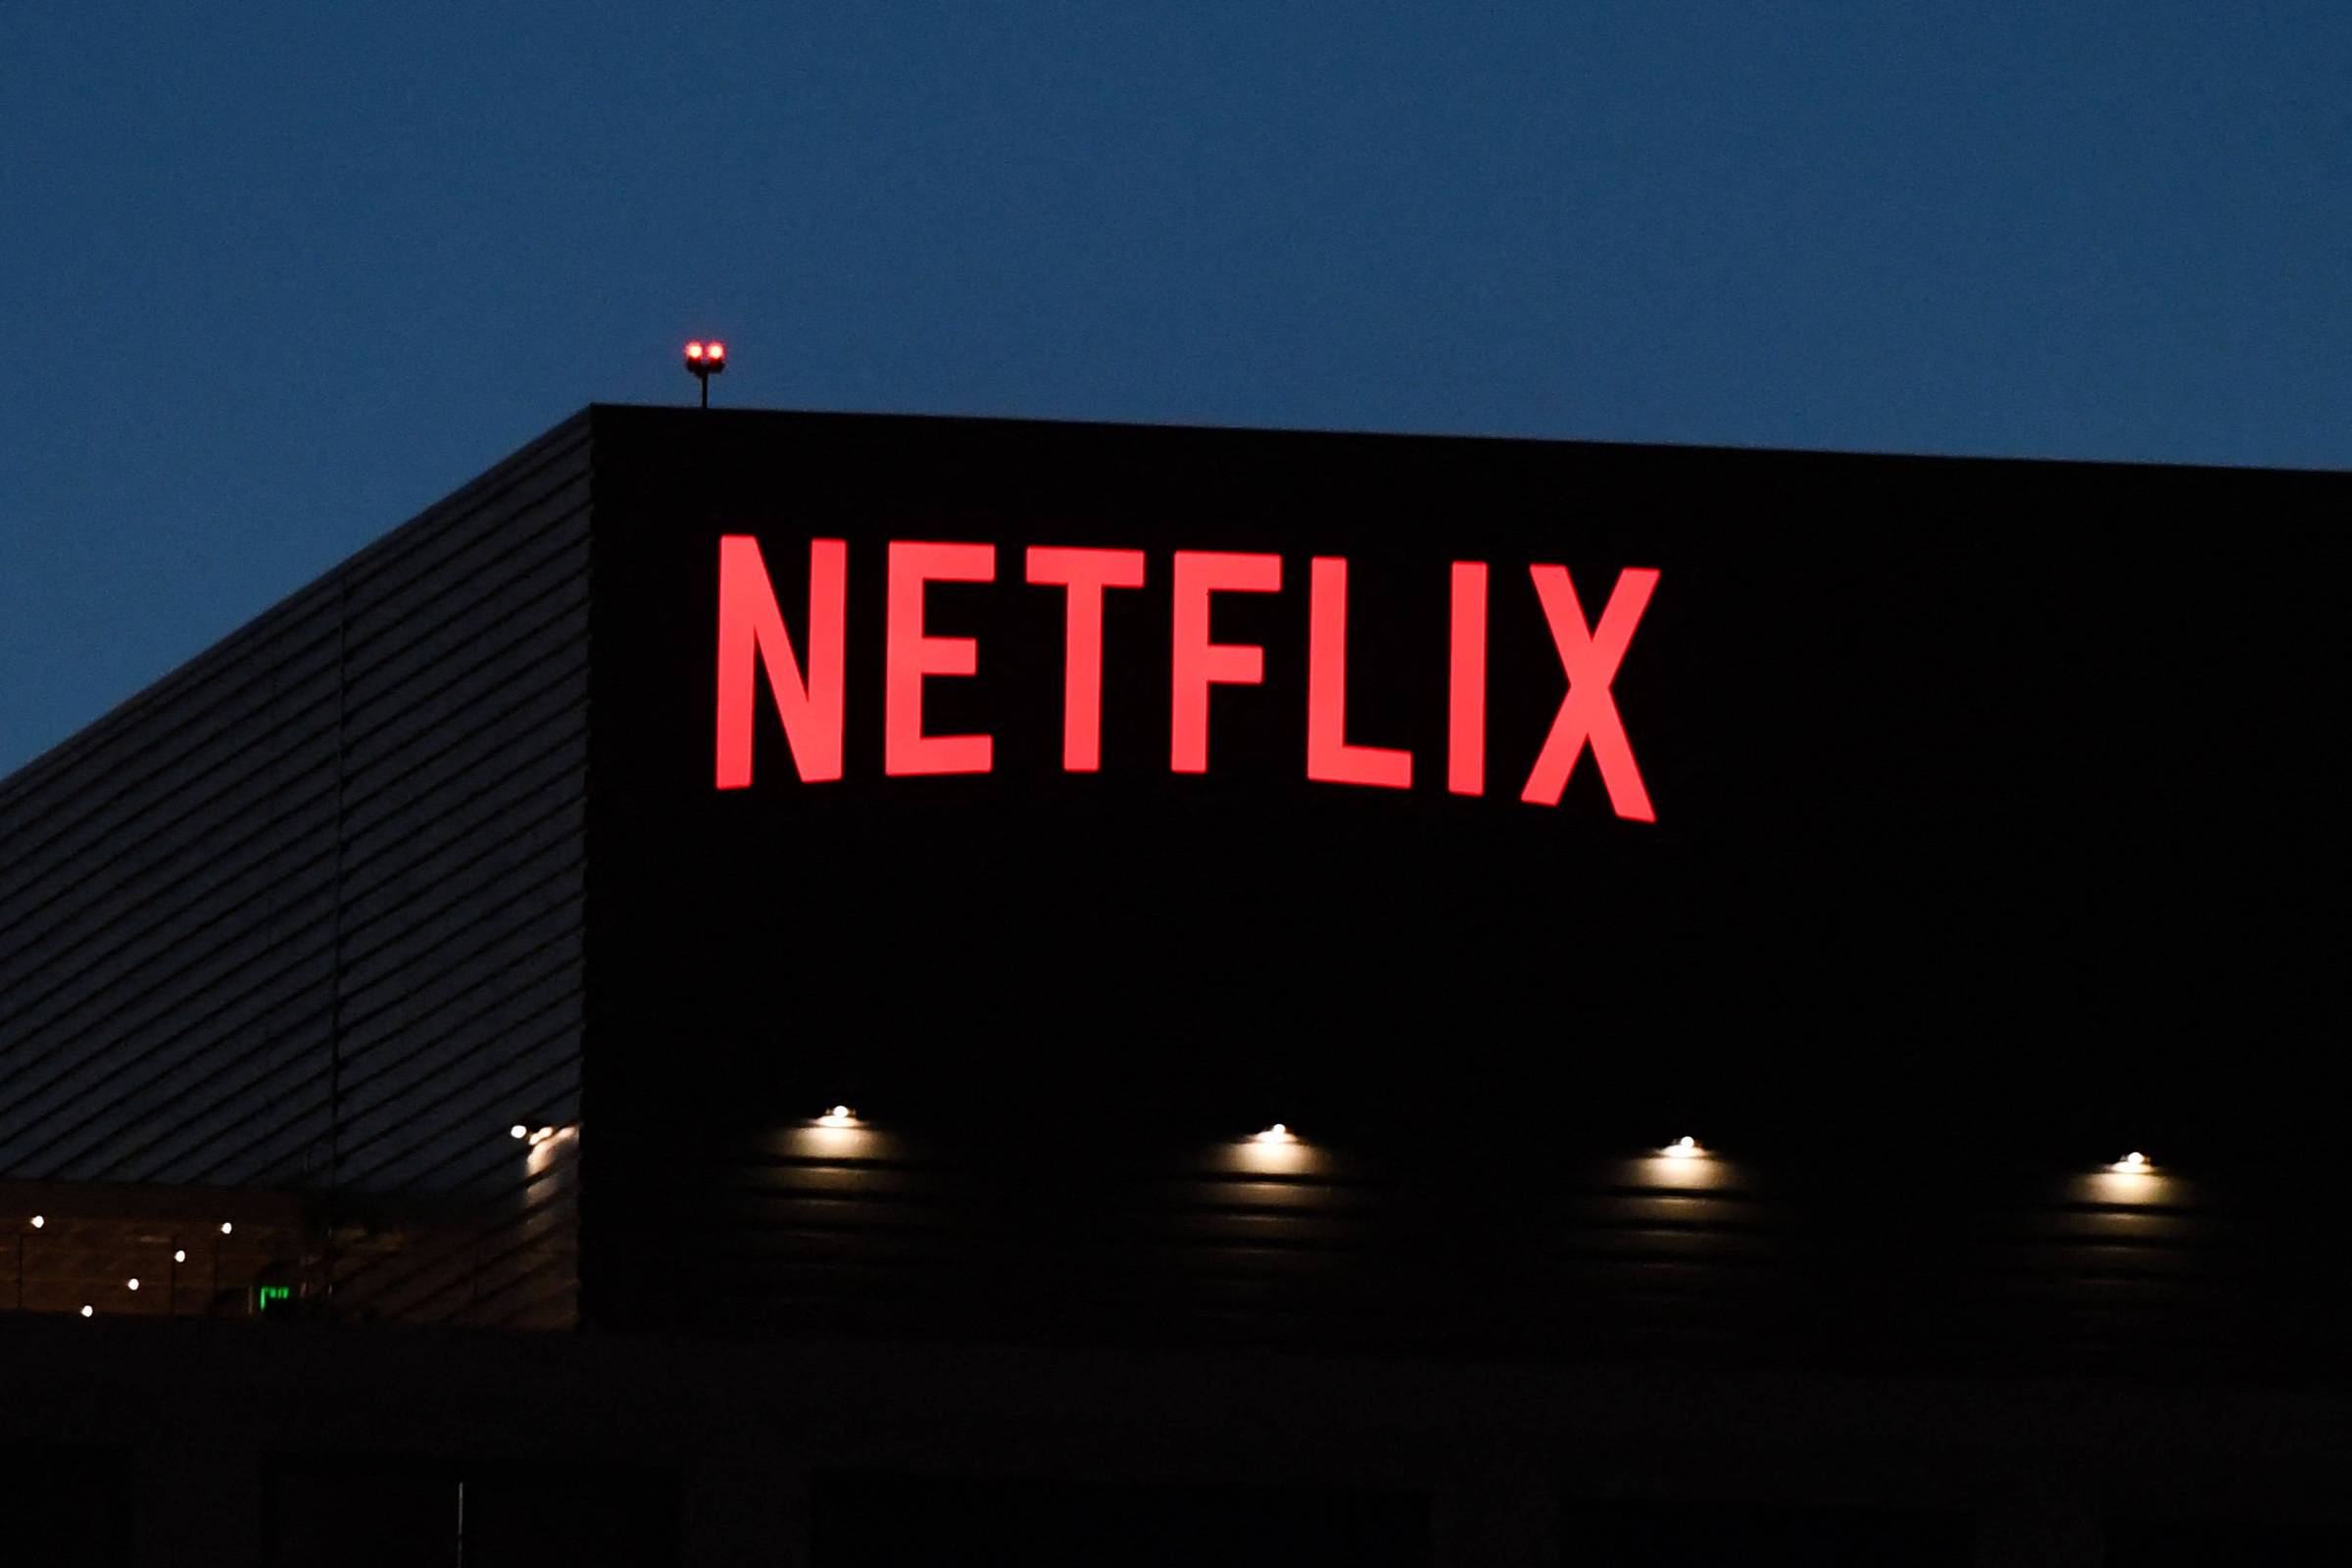 Netflix é o serviço mais cancelado, seguido de Globoplay